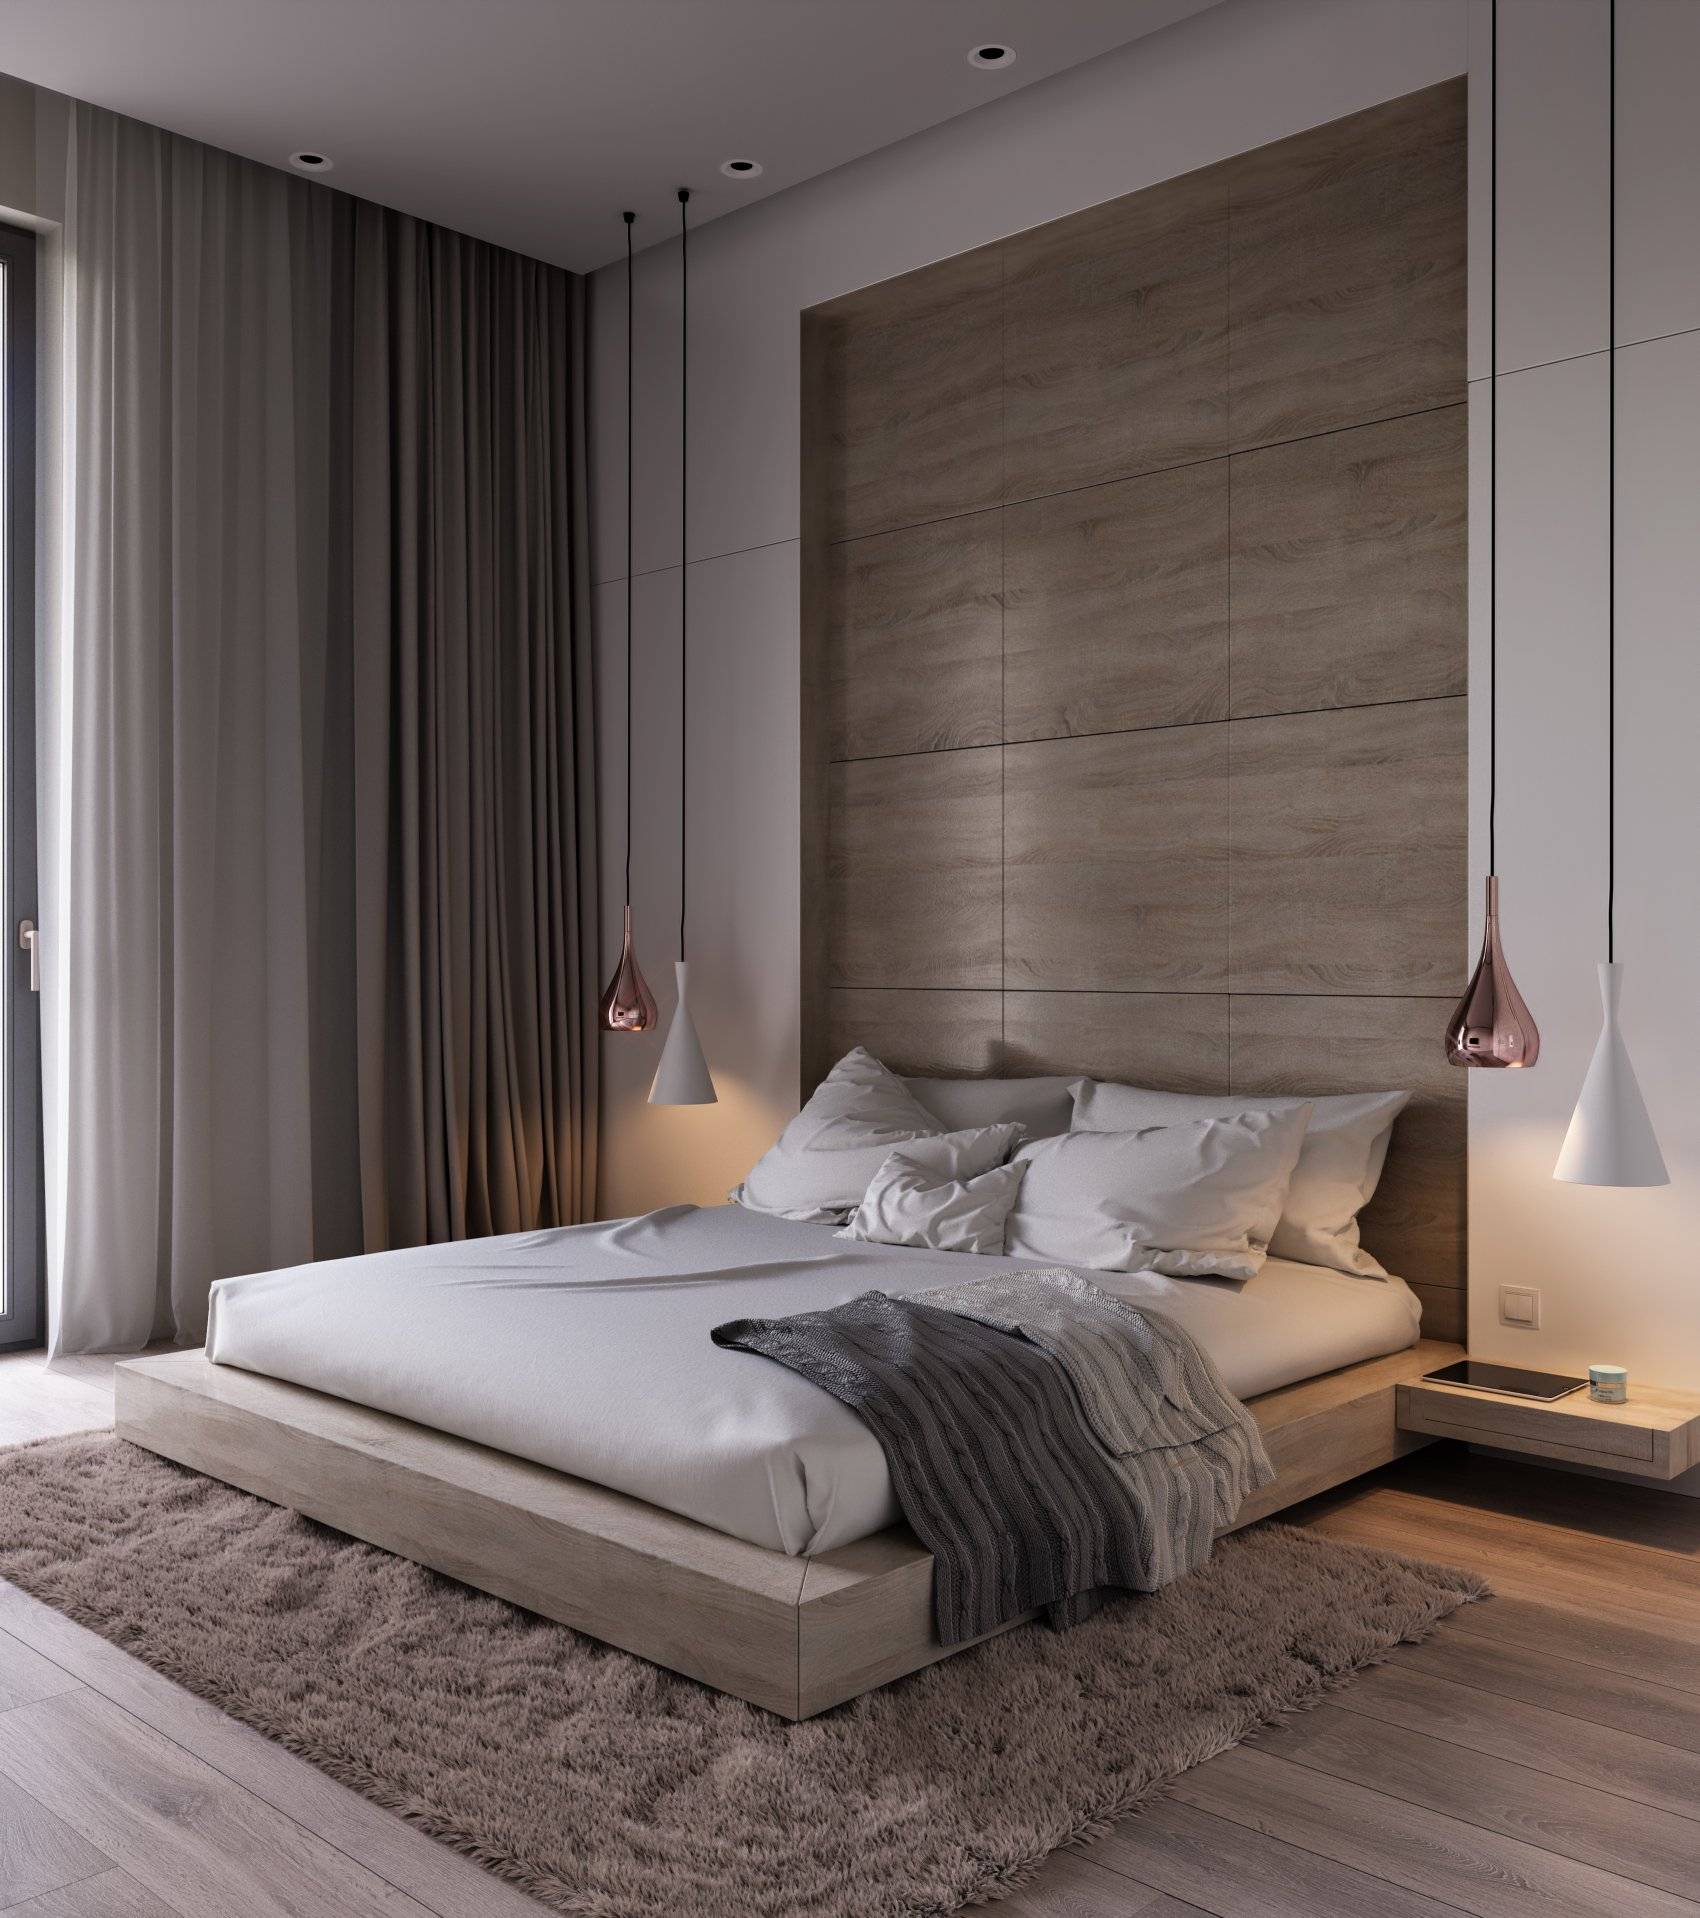 Дизайн современной спальни 2019 - фото, новинки, тенденции